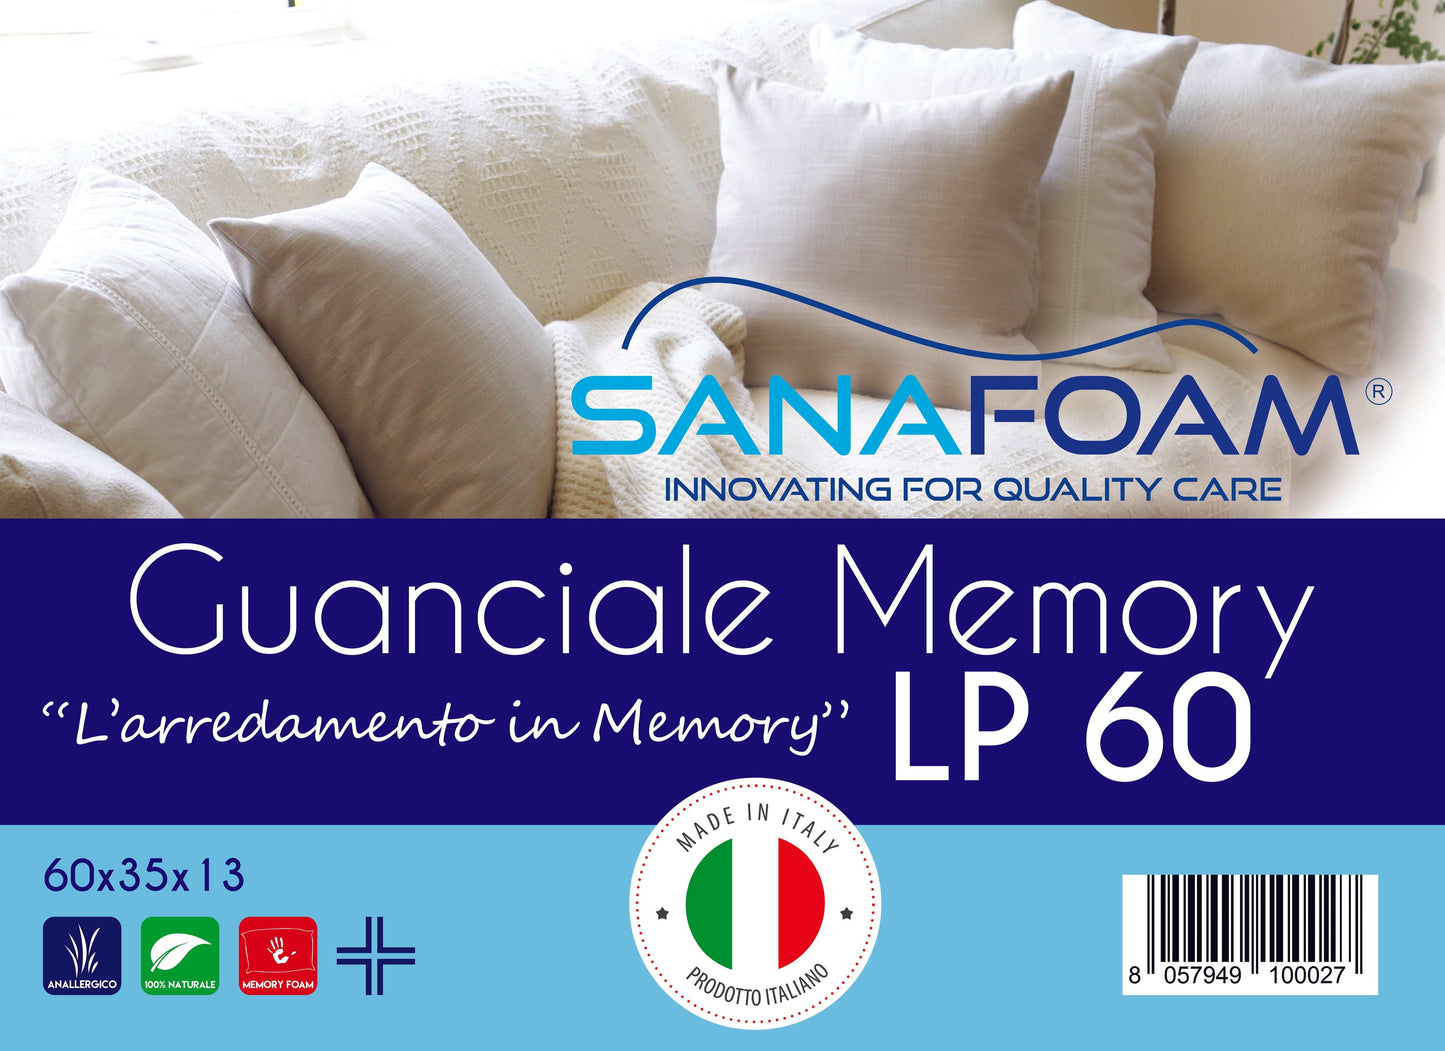 Guanciale Memory Foam - SANAFOAM - Confezione da 2 - I migliori prodotti Made in Italy da Fiera di Monza Shop - Solo 38€! Acquista subito su Fiera di Monza Shop!